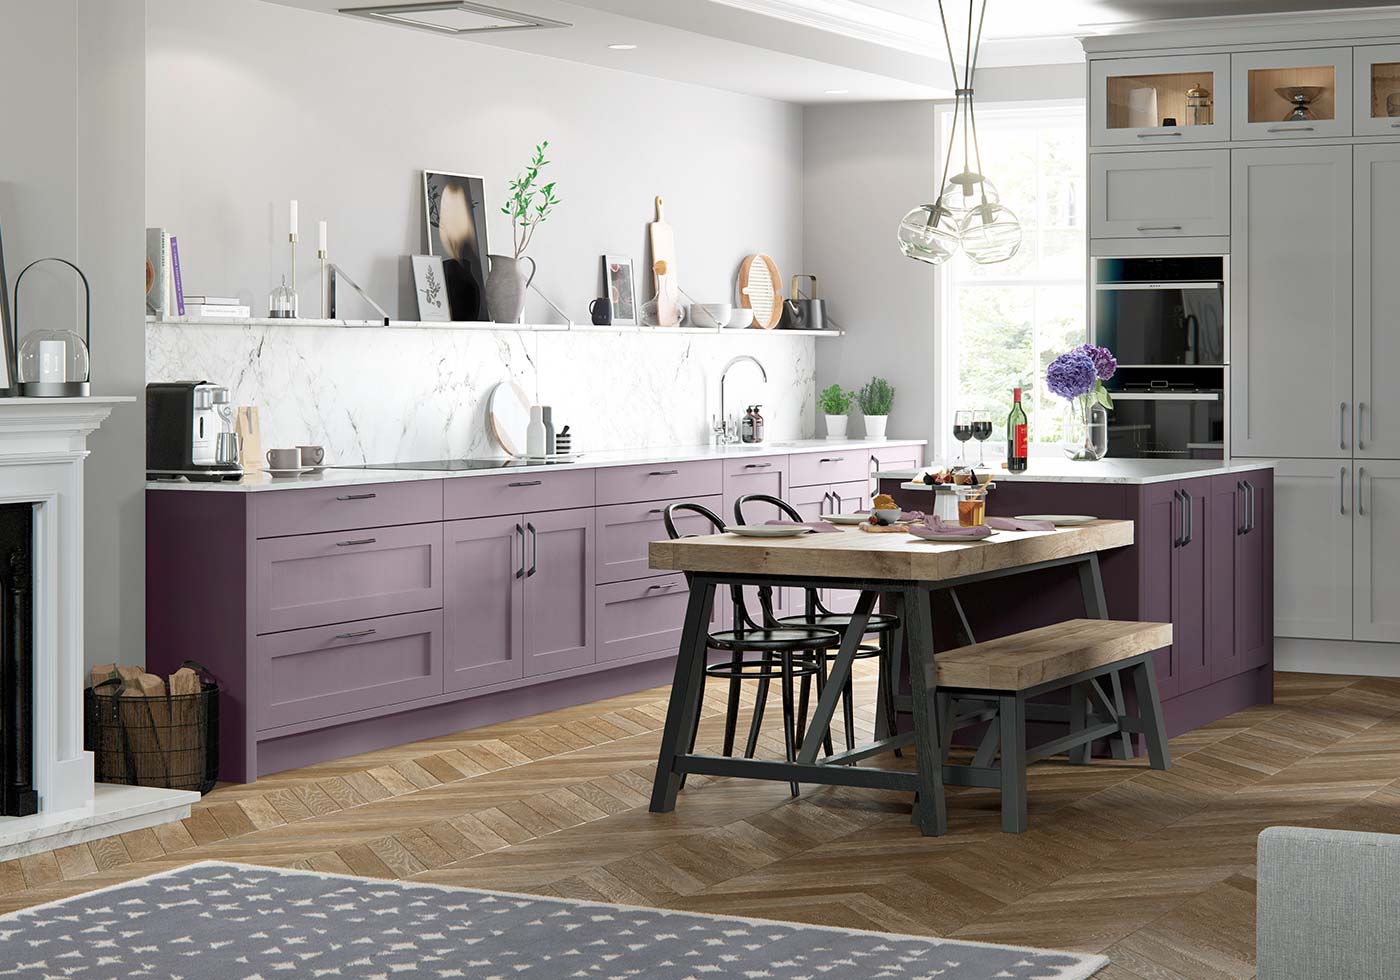 elegeant kitchen with purple design